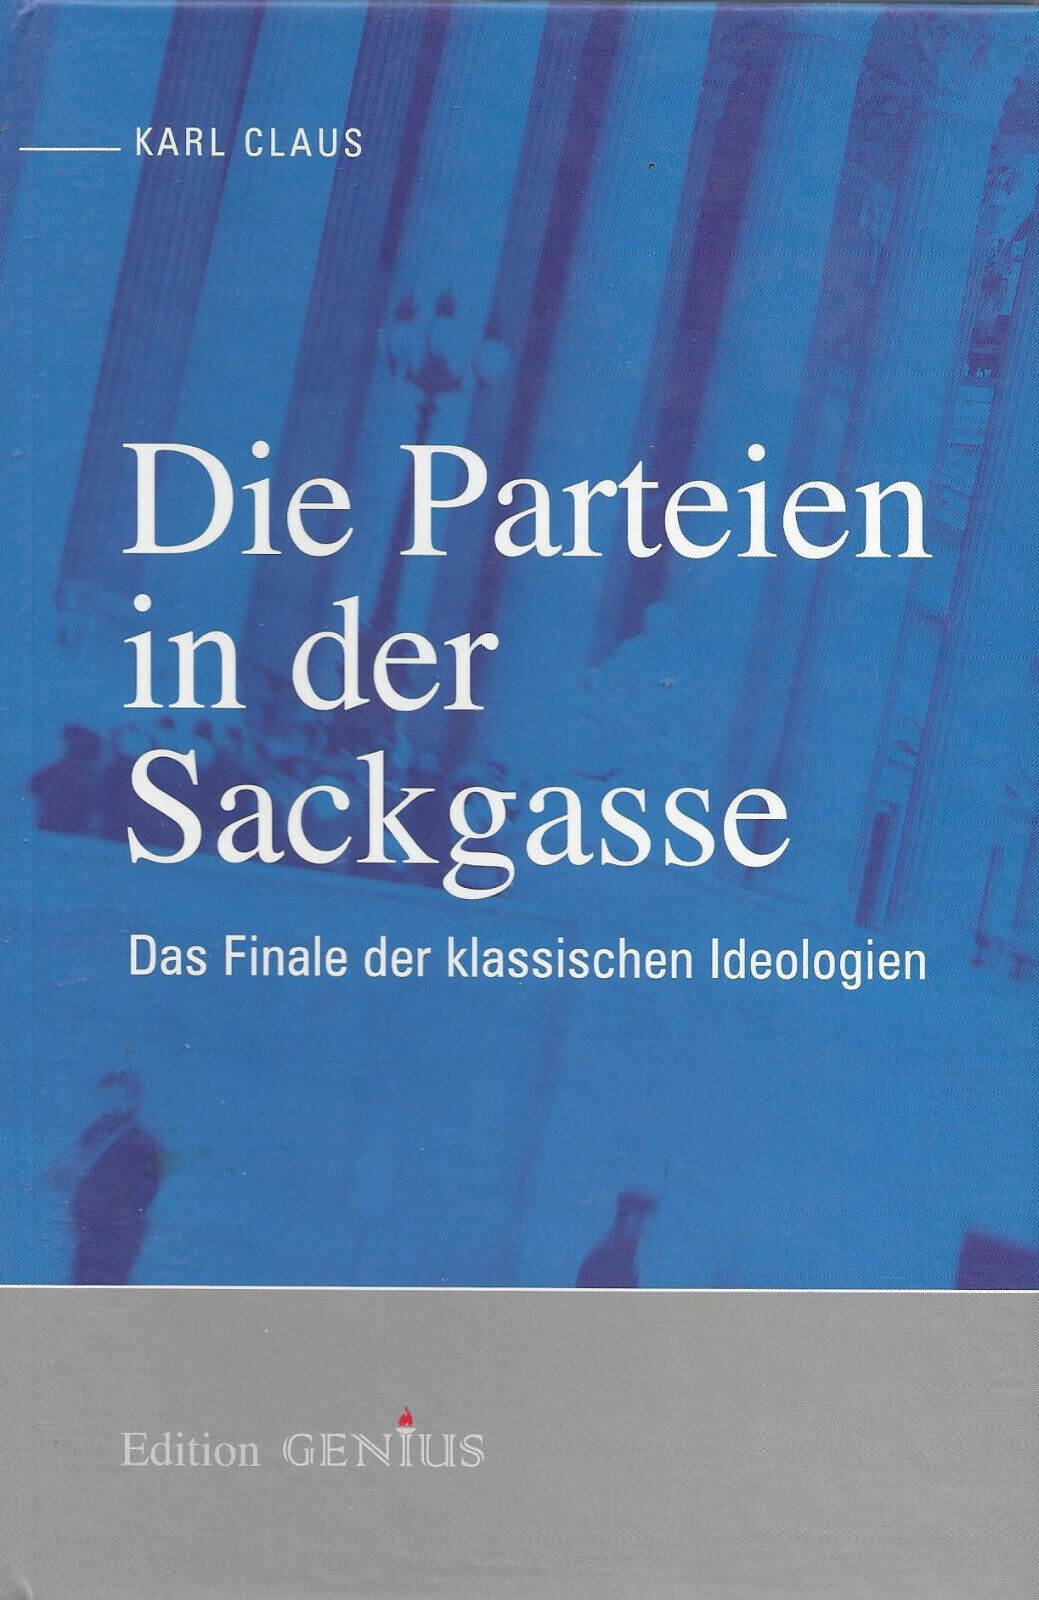 Die Parteien in der Sackgasse - Das Finale der klassischen Ideologien Karl Claus